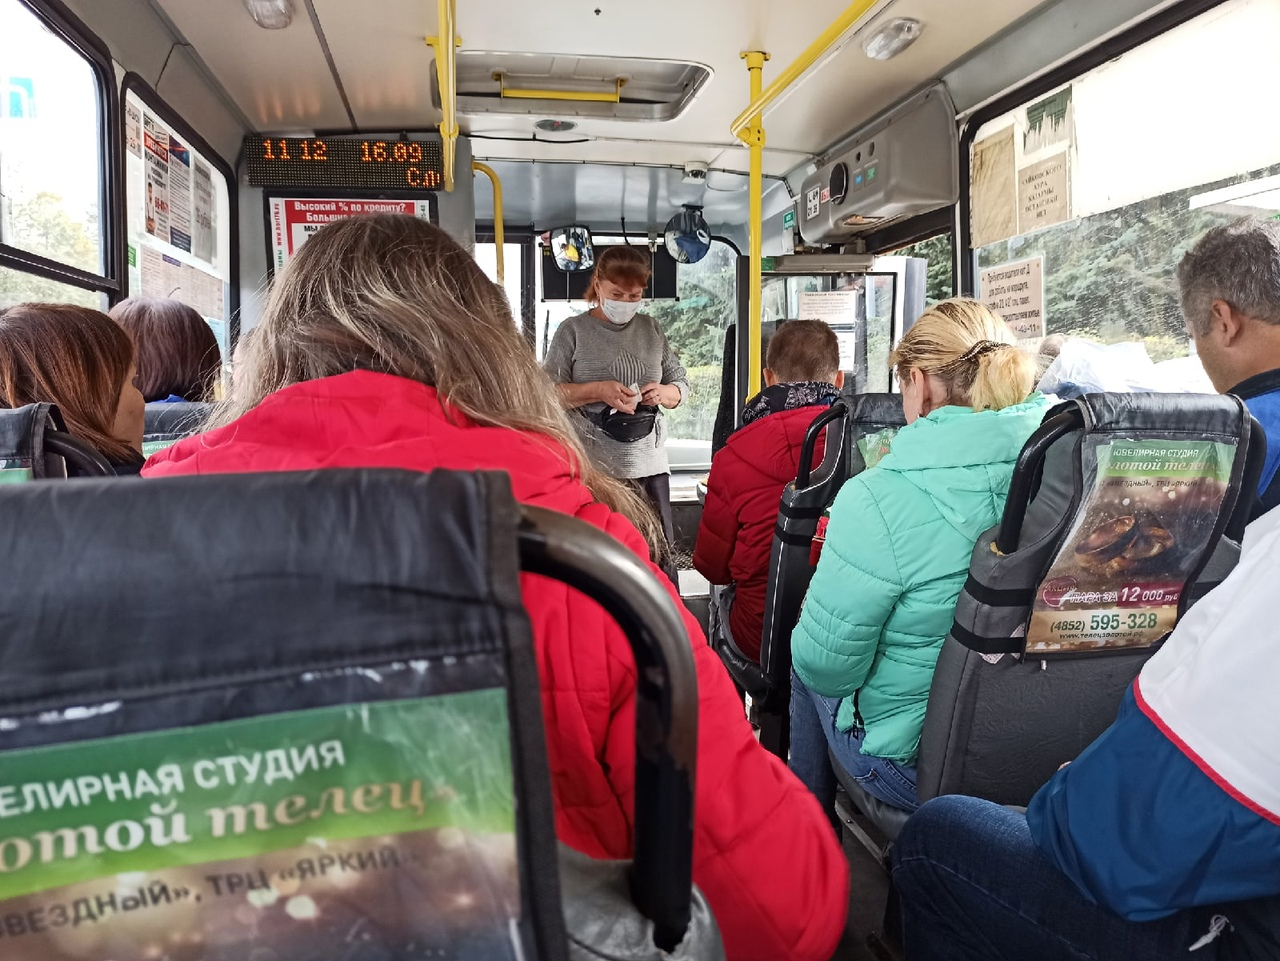 "Чтобы люди набивались в транспорт": новую маршрутную схему для ярославцев создала компания из Москвы